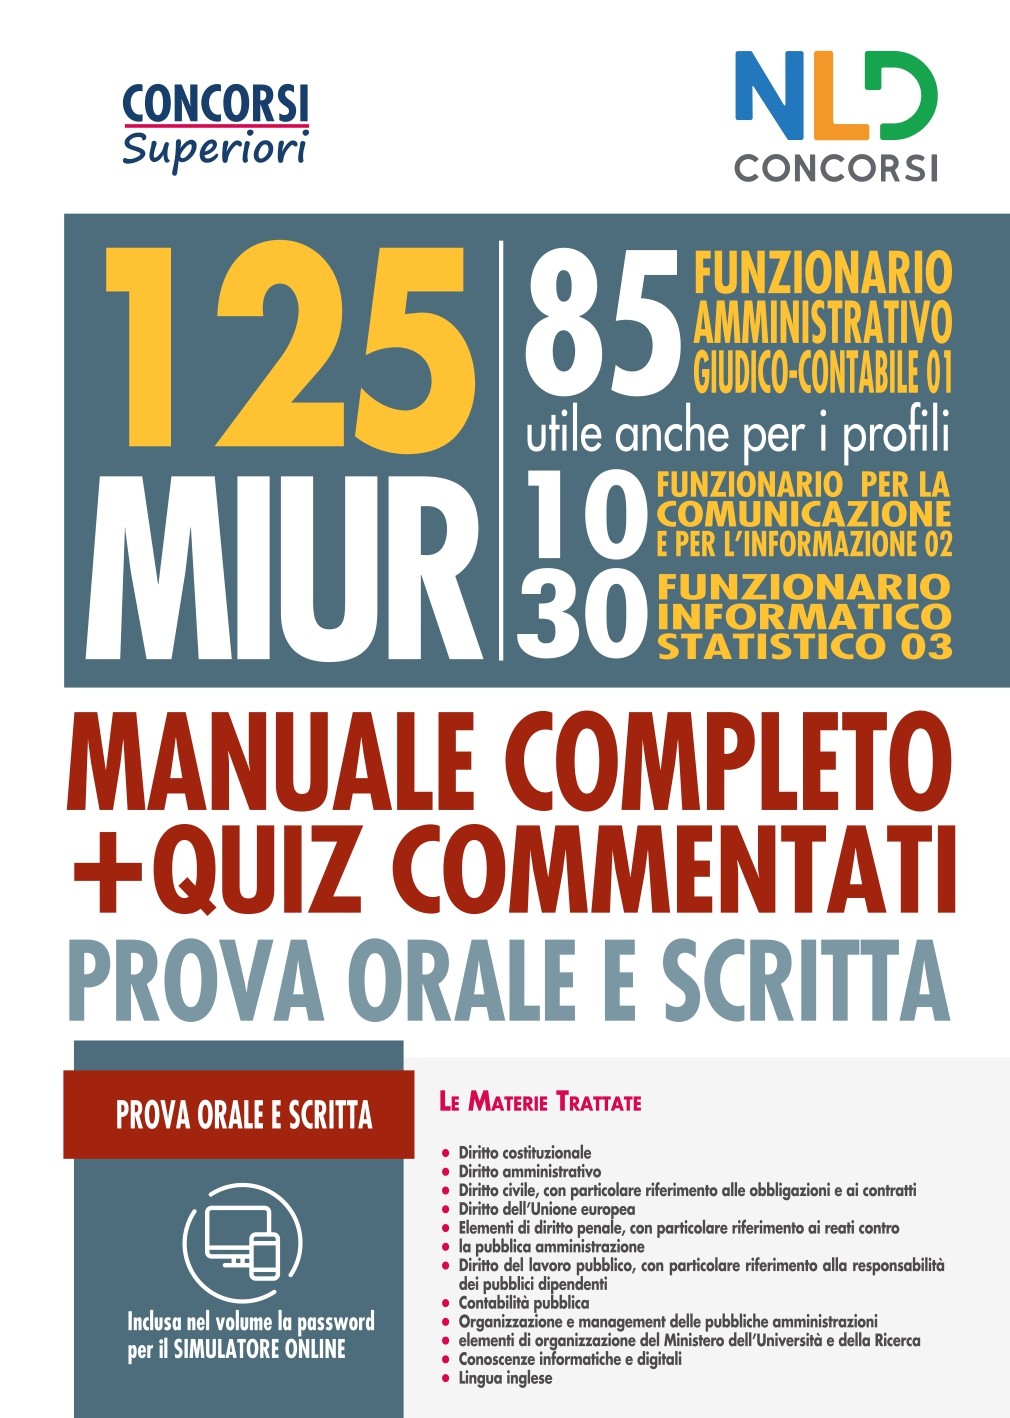 Concorso 125 MIUR: Manuale Completo + Quiz Commentati per la prova Orale e Scritta